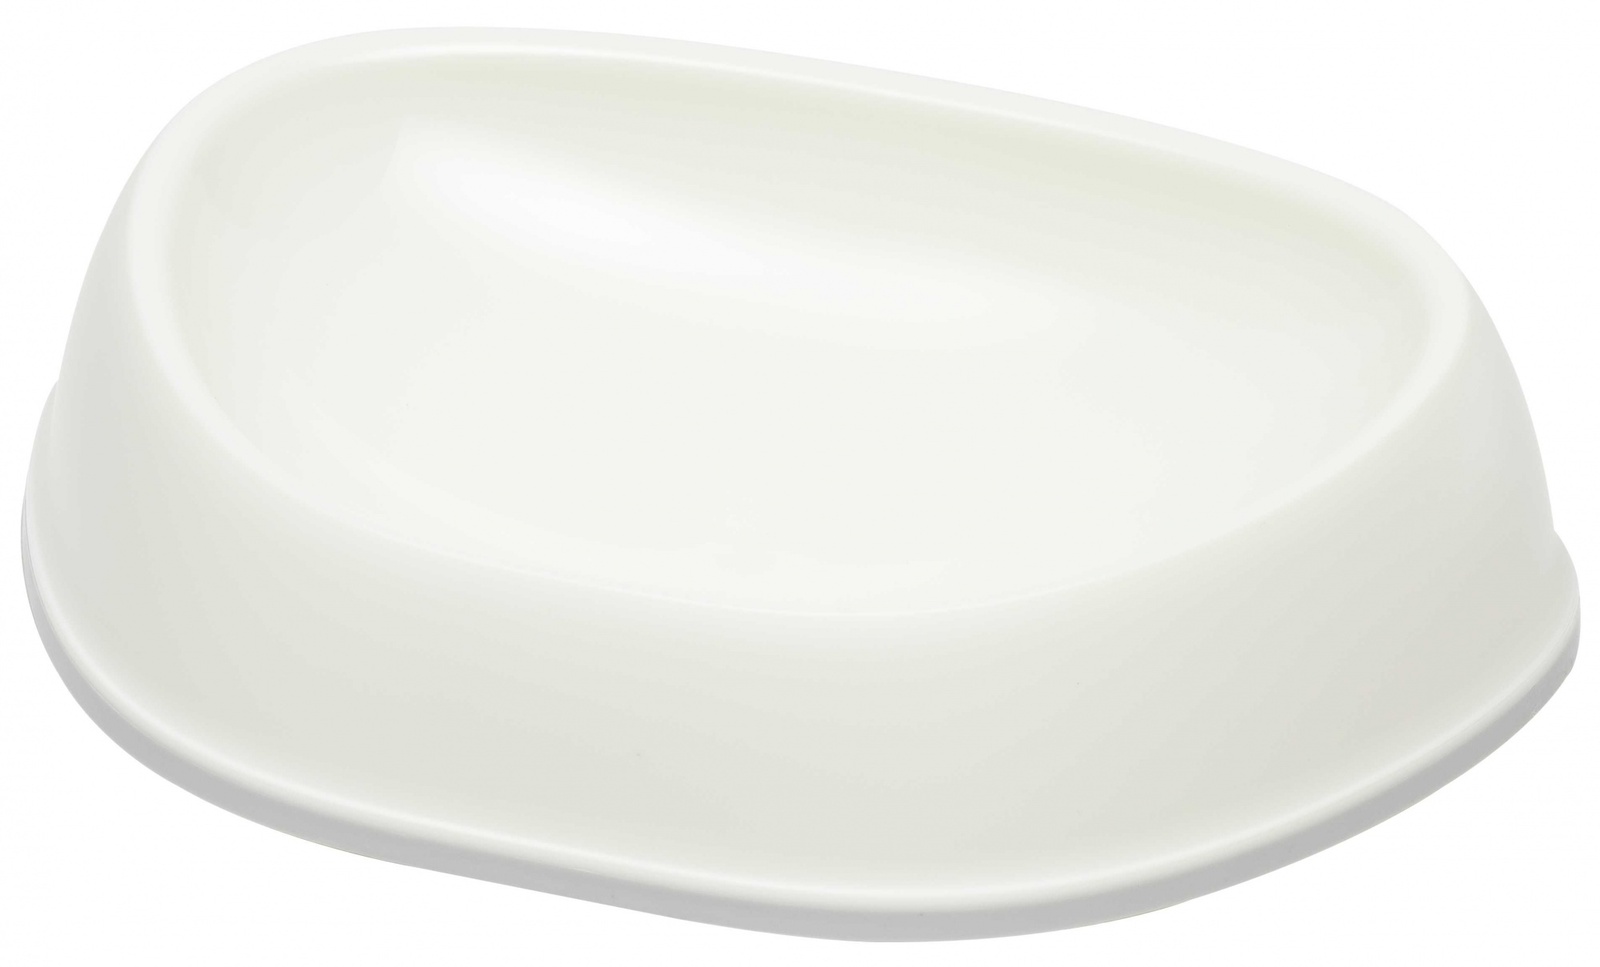 Moderna Moderna миска Sensibowls, белый (350 мл) moderna moderna миска пластиковая recycled gusto теплый серый 350 мл